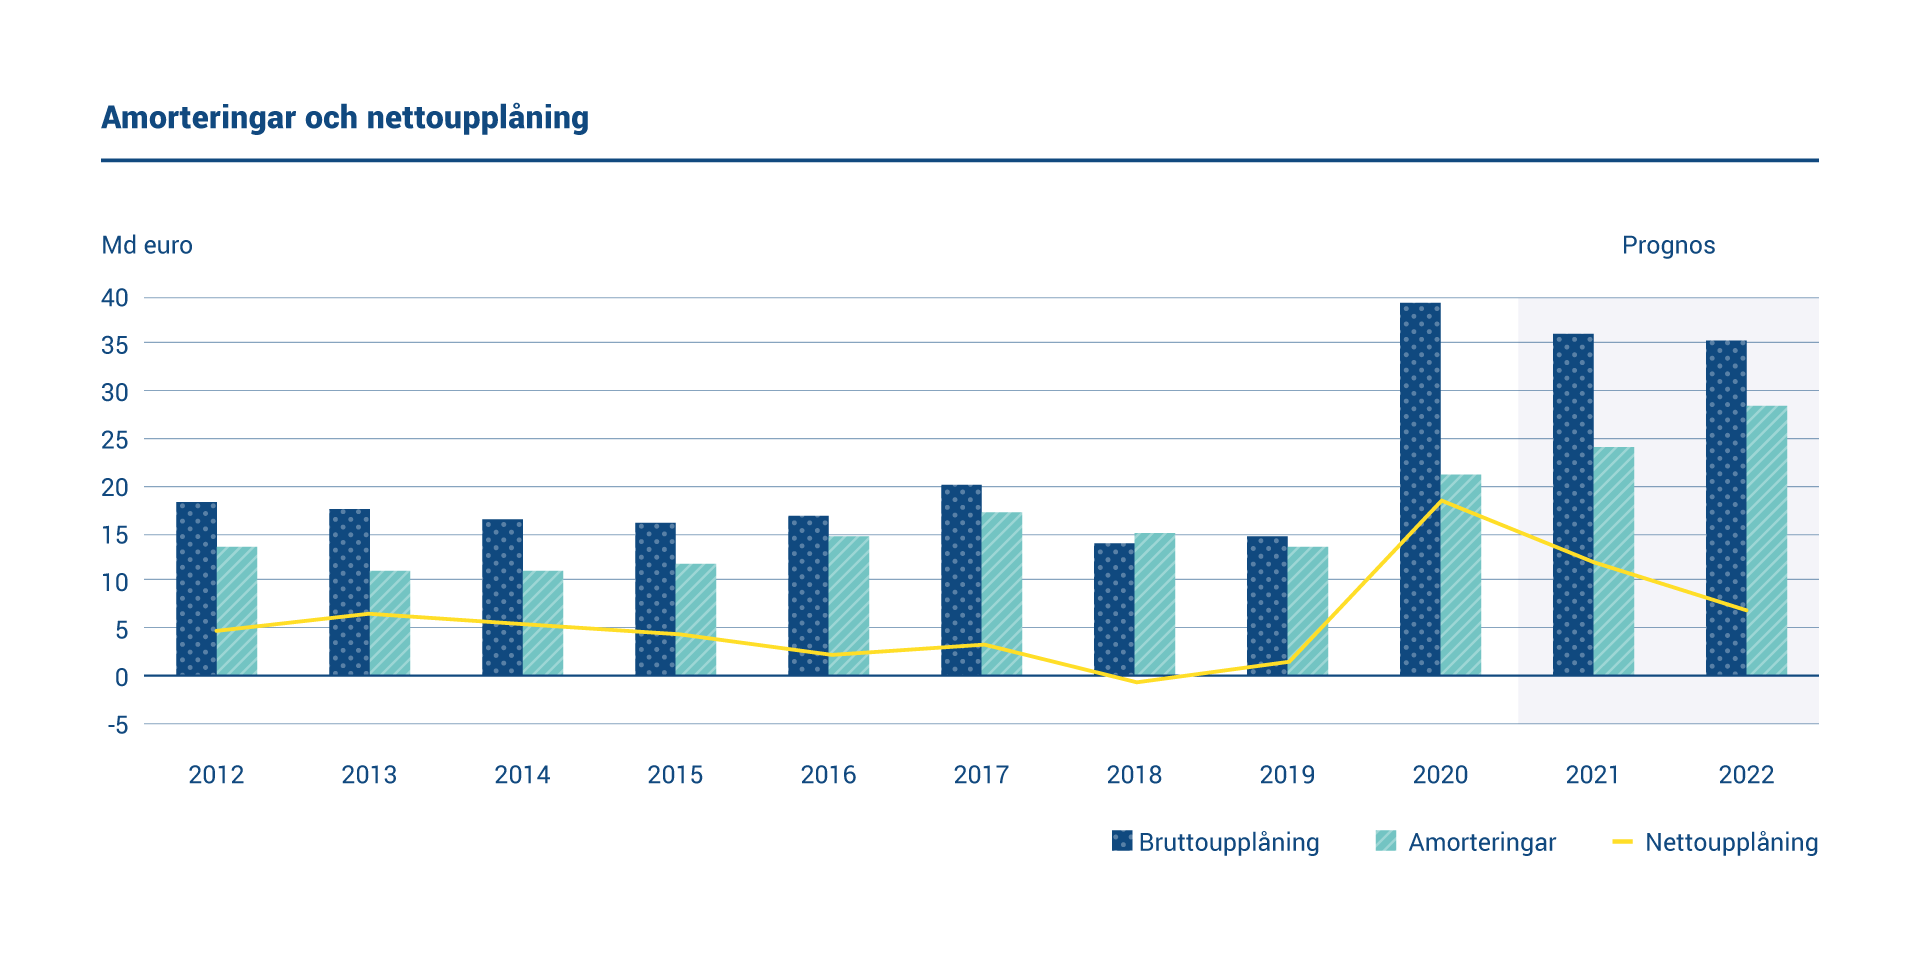 Diagrammet visar den årliga bruttoupplåningen, amorteringar och nettoupplåningen 2012–2022. År 2020 var amorteringarna 21 miljarder euro och nettoupplåningen uppgick till 18,32 miljarder euro.